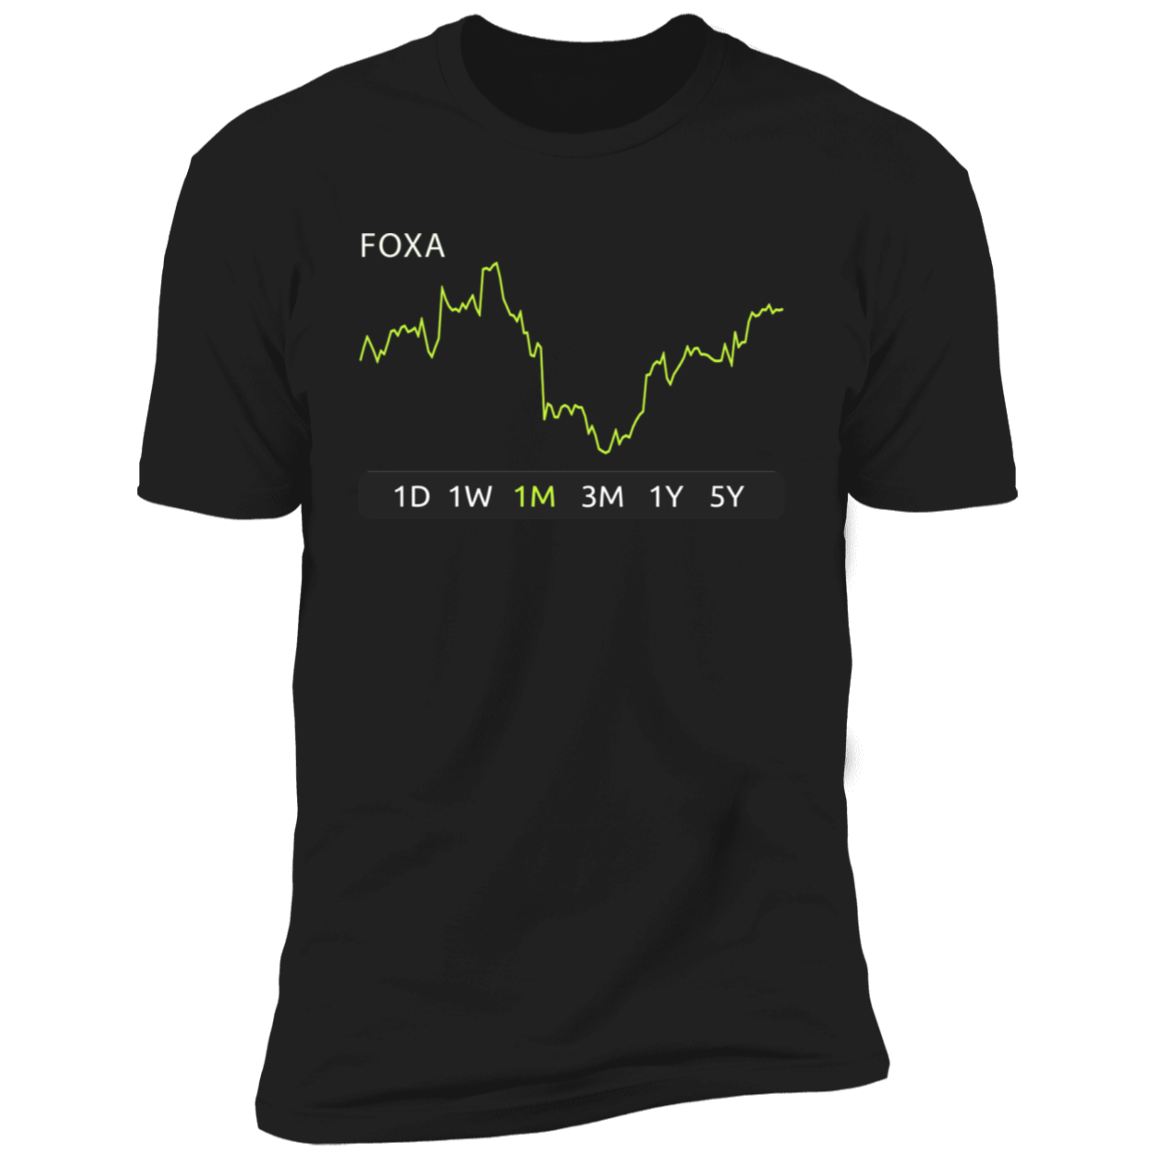 FOXA Stock 1m Premium T-Shirt